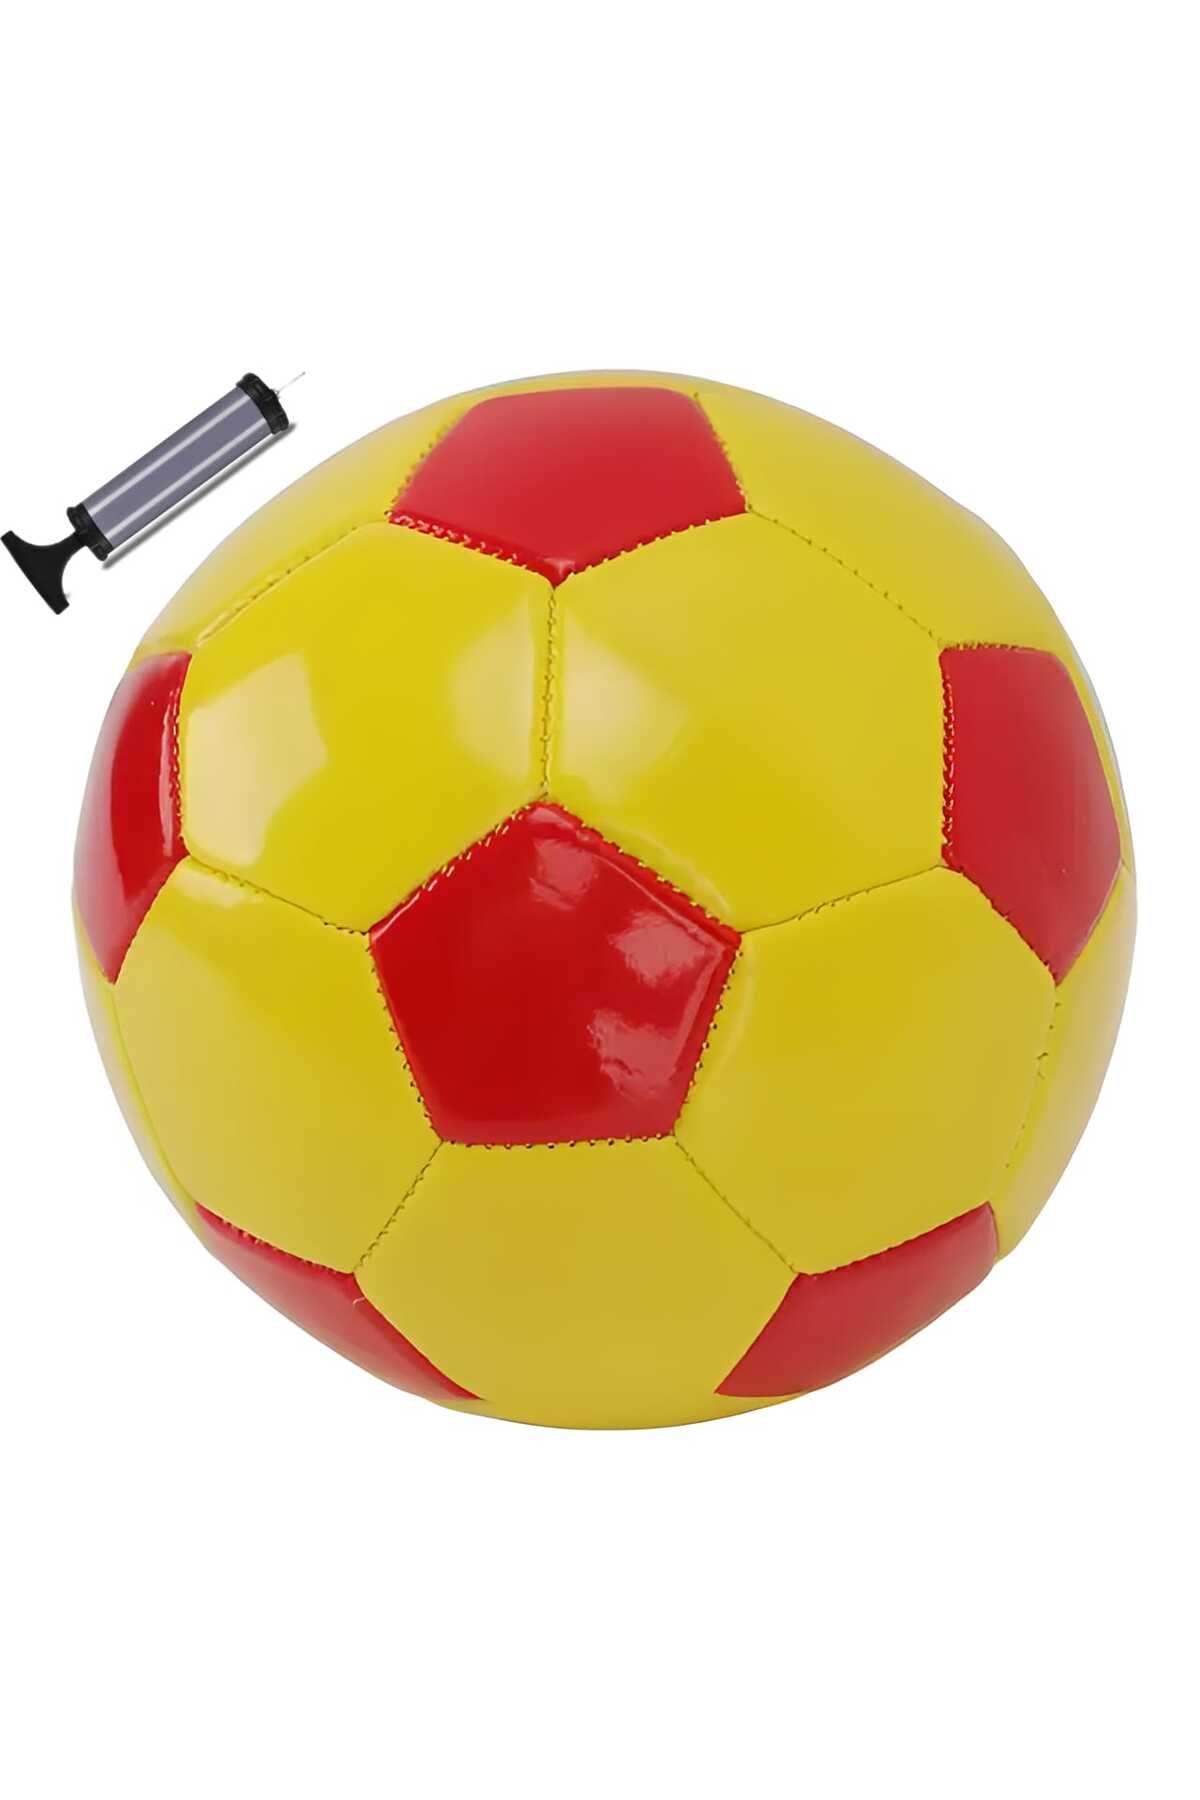 özakkuzu Futbol Topu Ve Şişirme Pompası